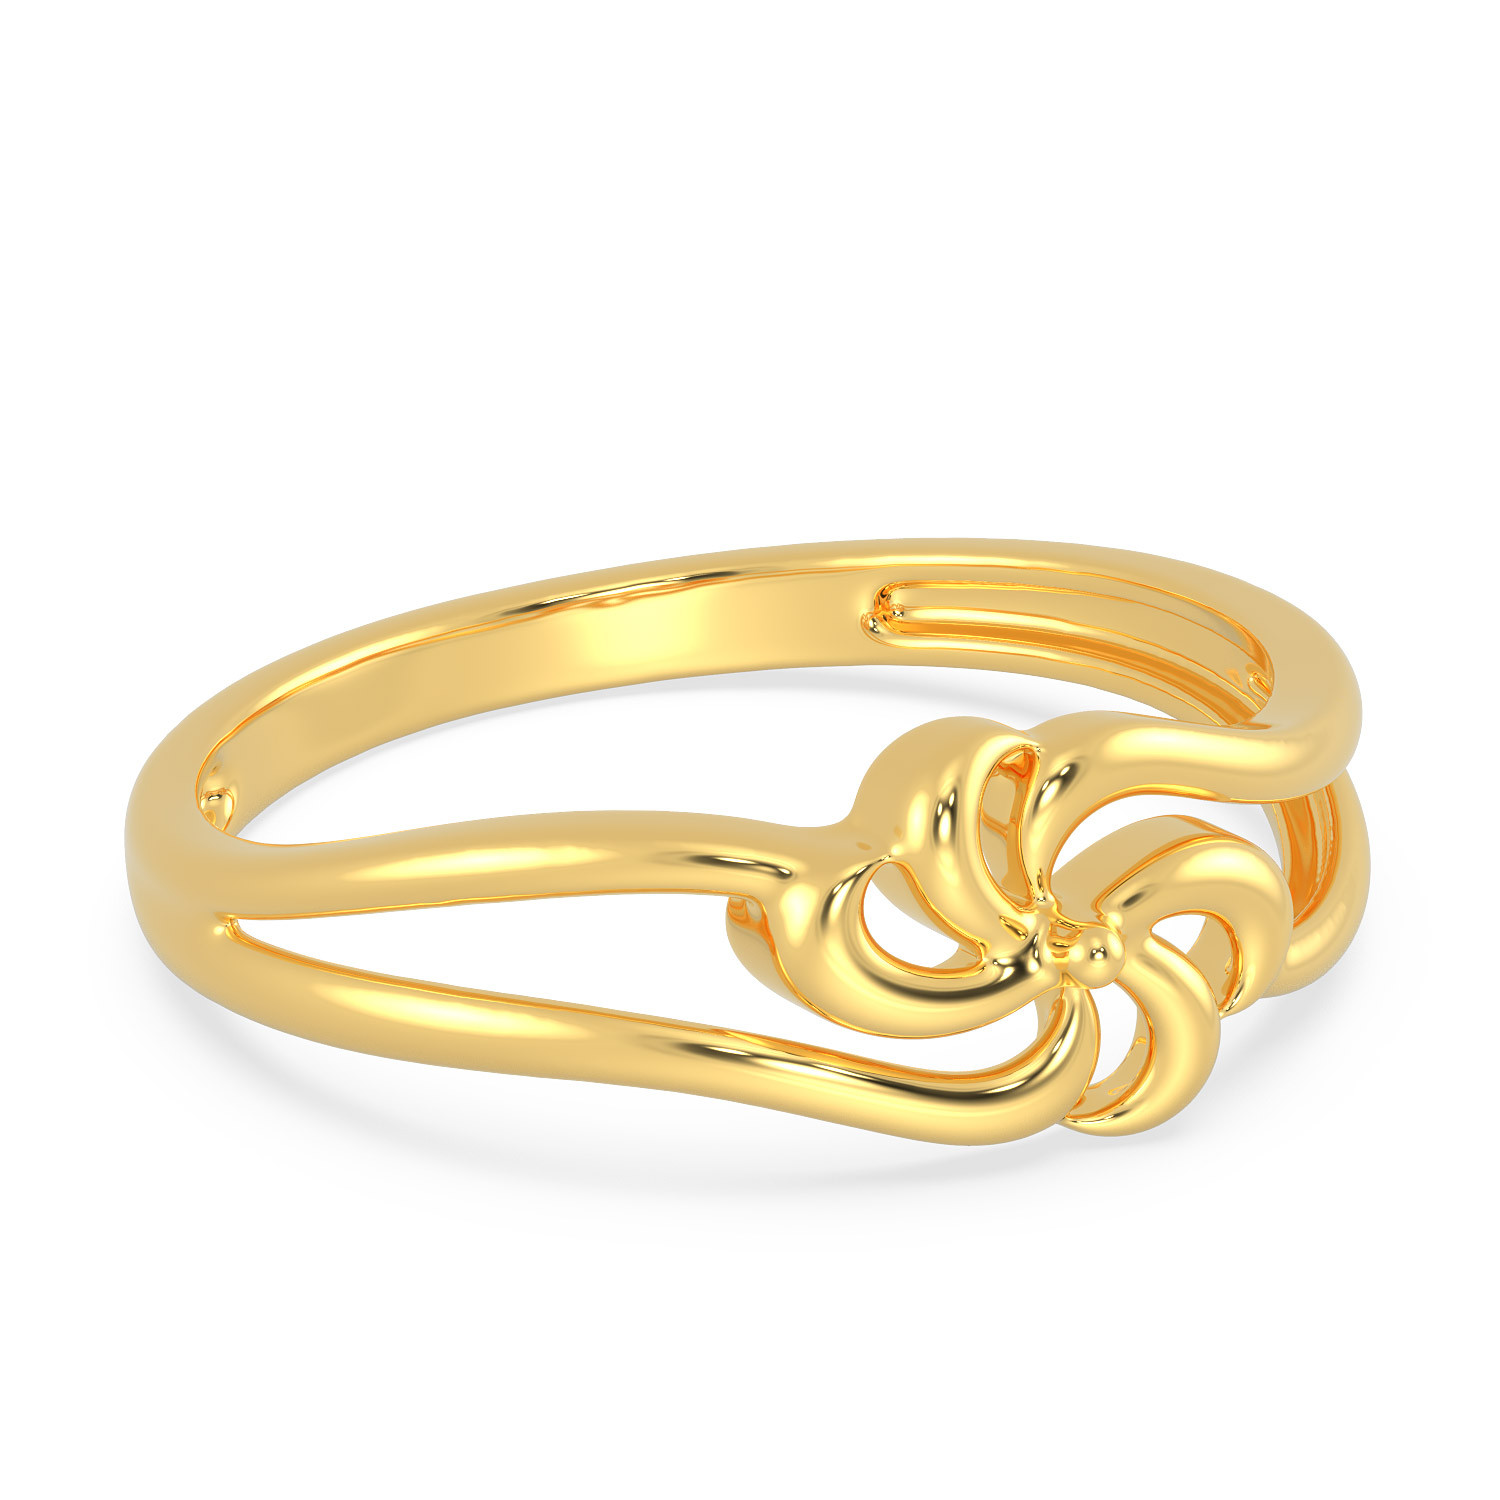 Buy Malabar Gold Ring MHAAAAAAEOPT for Women Online | Malabar Gold ...